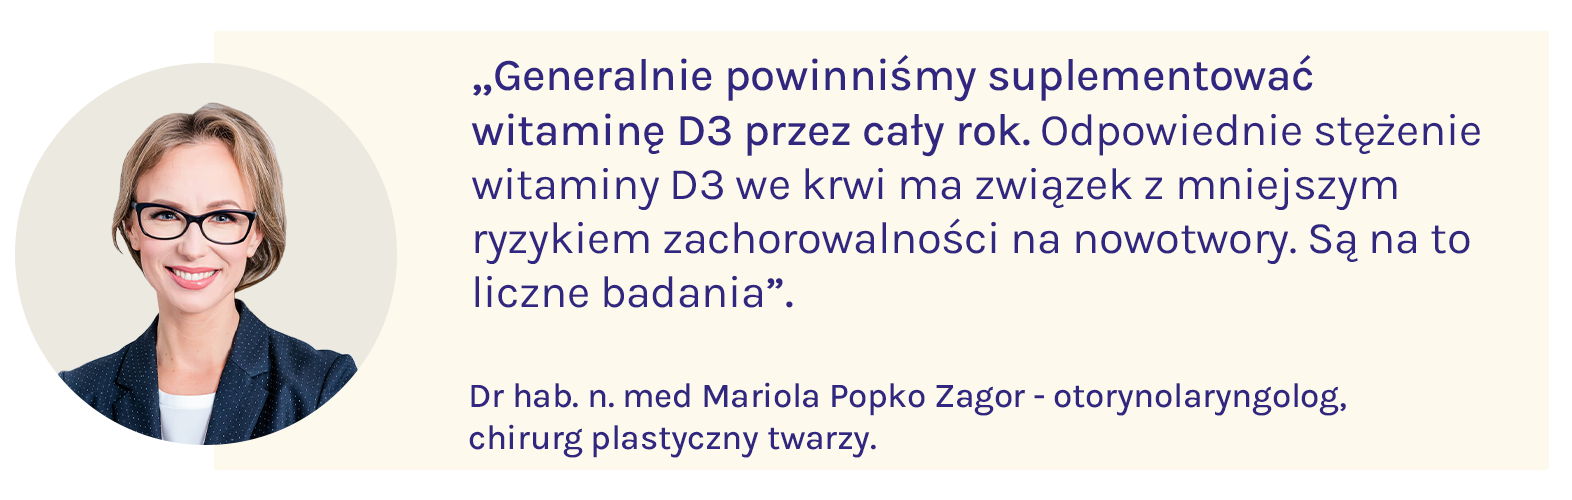 dr hab. n. med. Mariola Popko Zagor mówi o tym, że suplementacja witaminą D3 jest konieczna przez cały rok